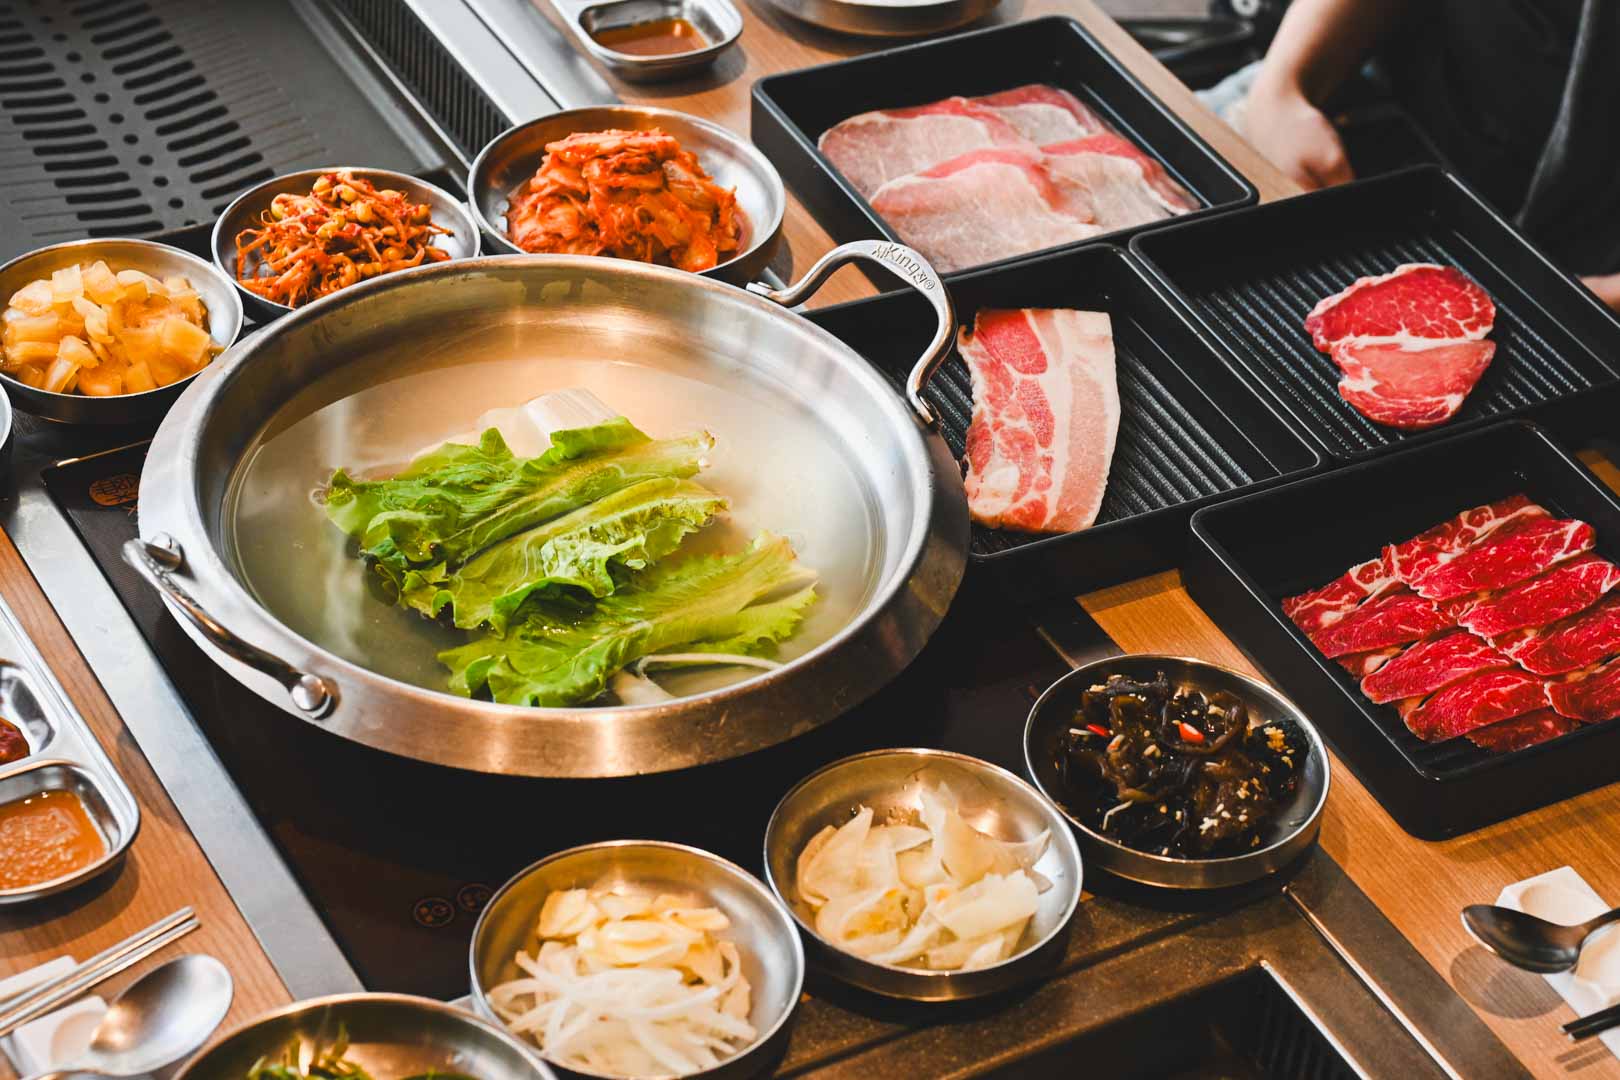 韓舍韓式烤肉, 韓舍韓式烤肉菜單, 韓舍韓式烤肉推薦, 桃園美食